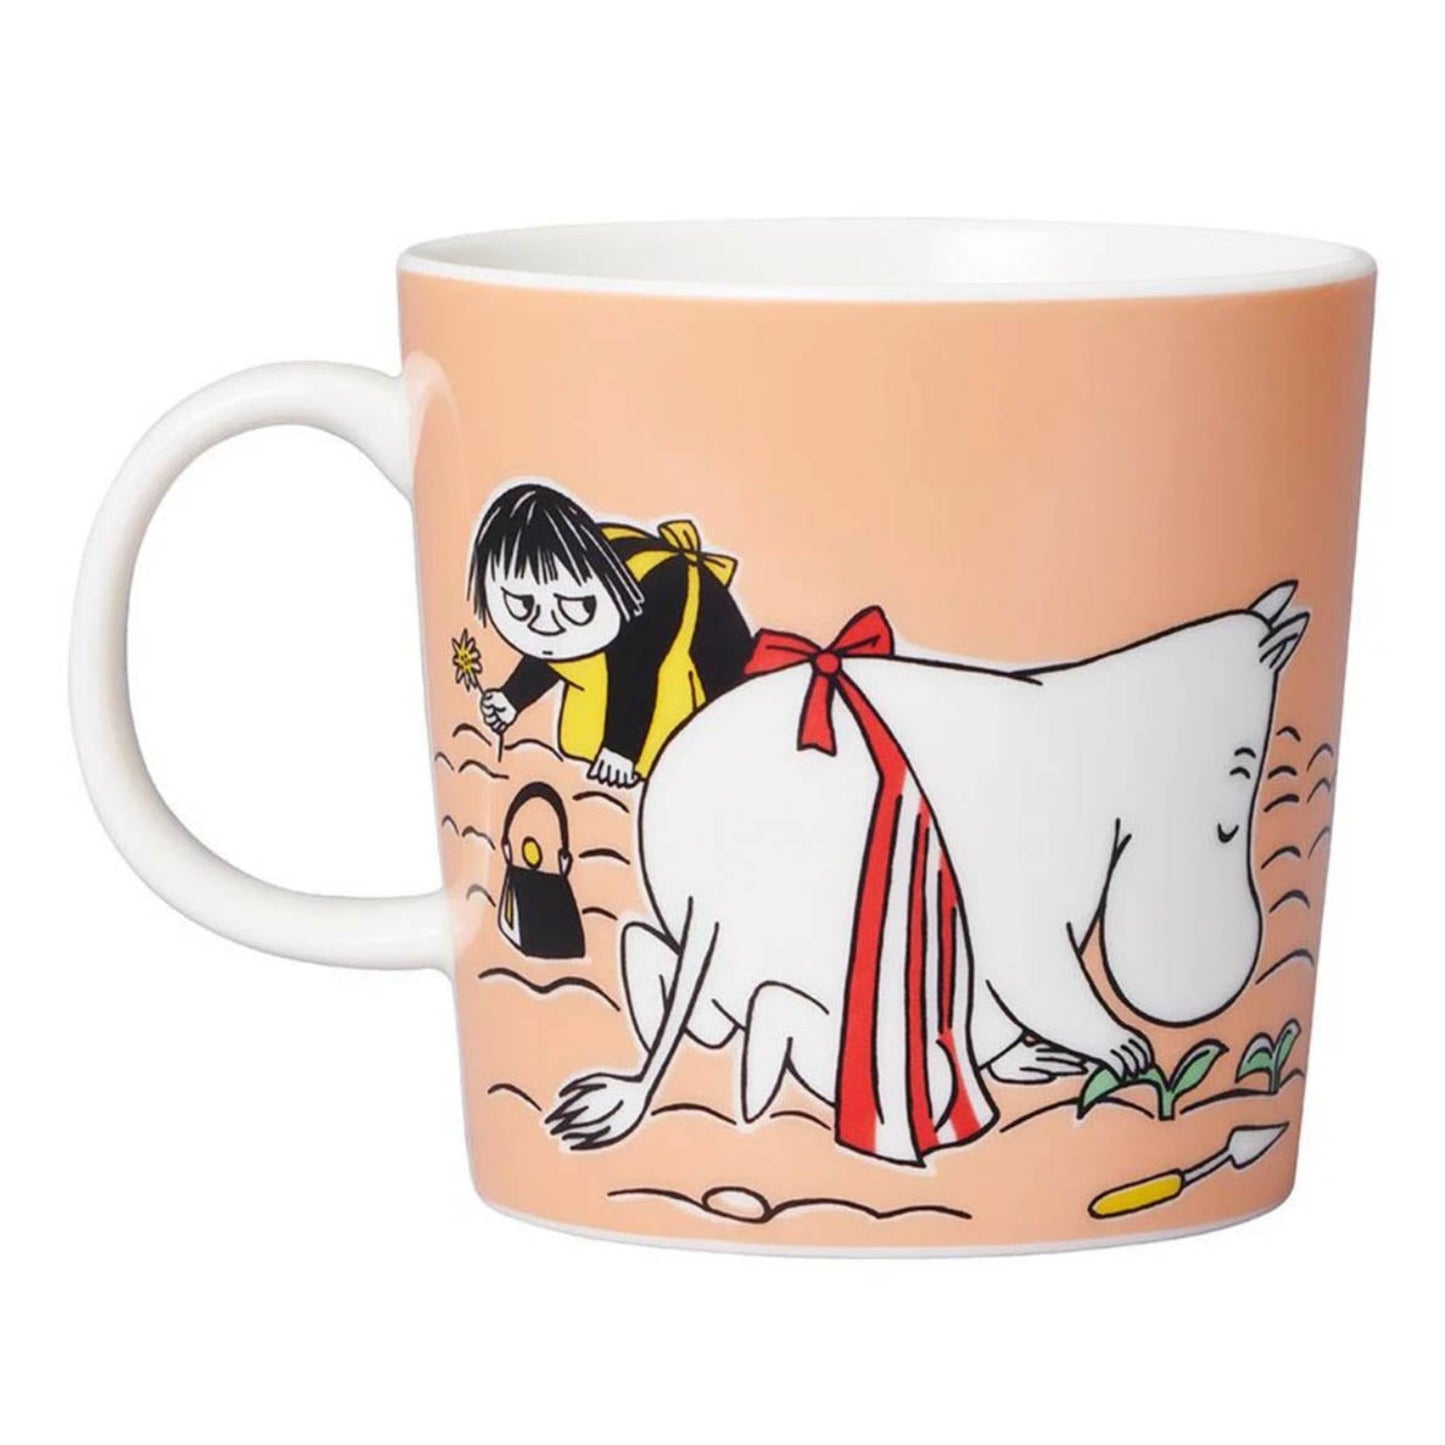 Moomin Mug by Arabia, Moominmamma (6579131940929)